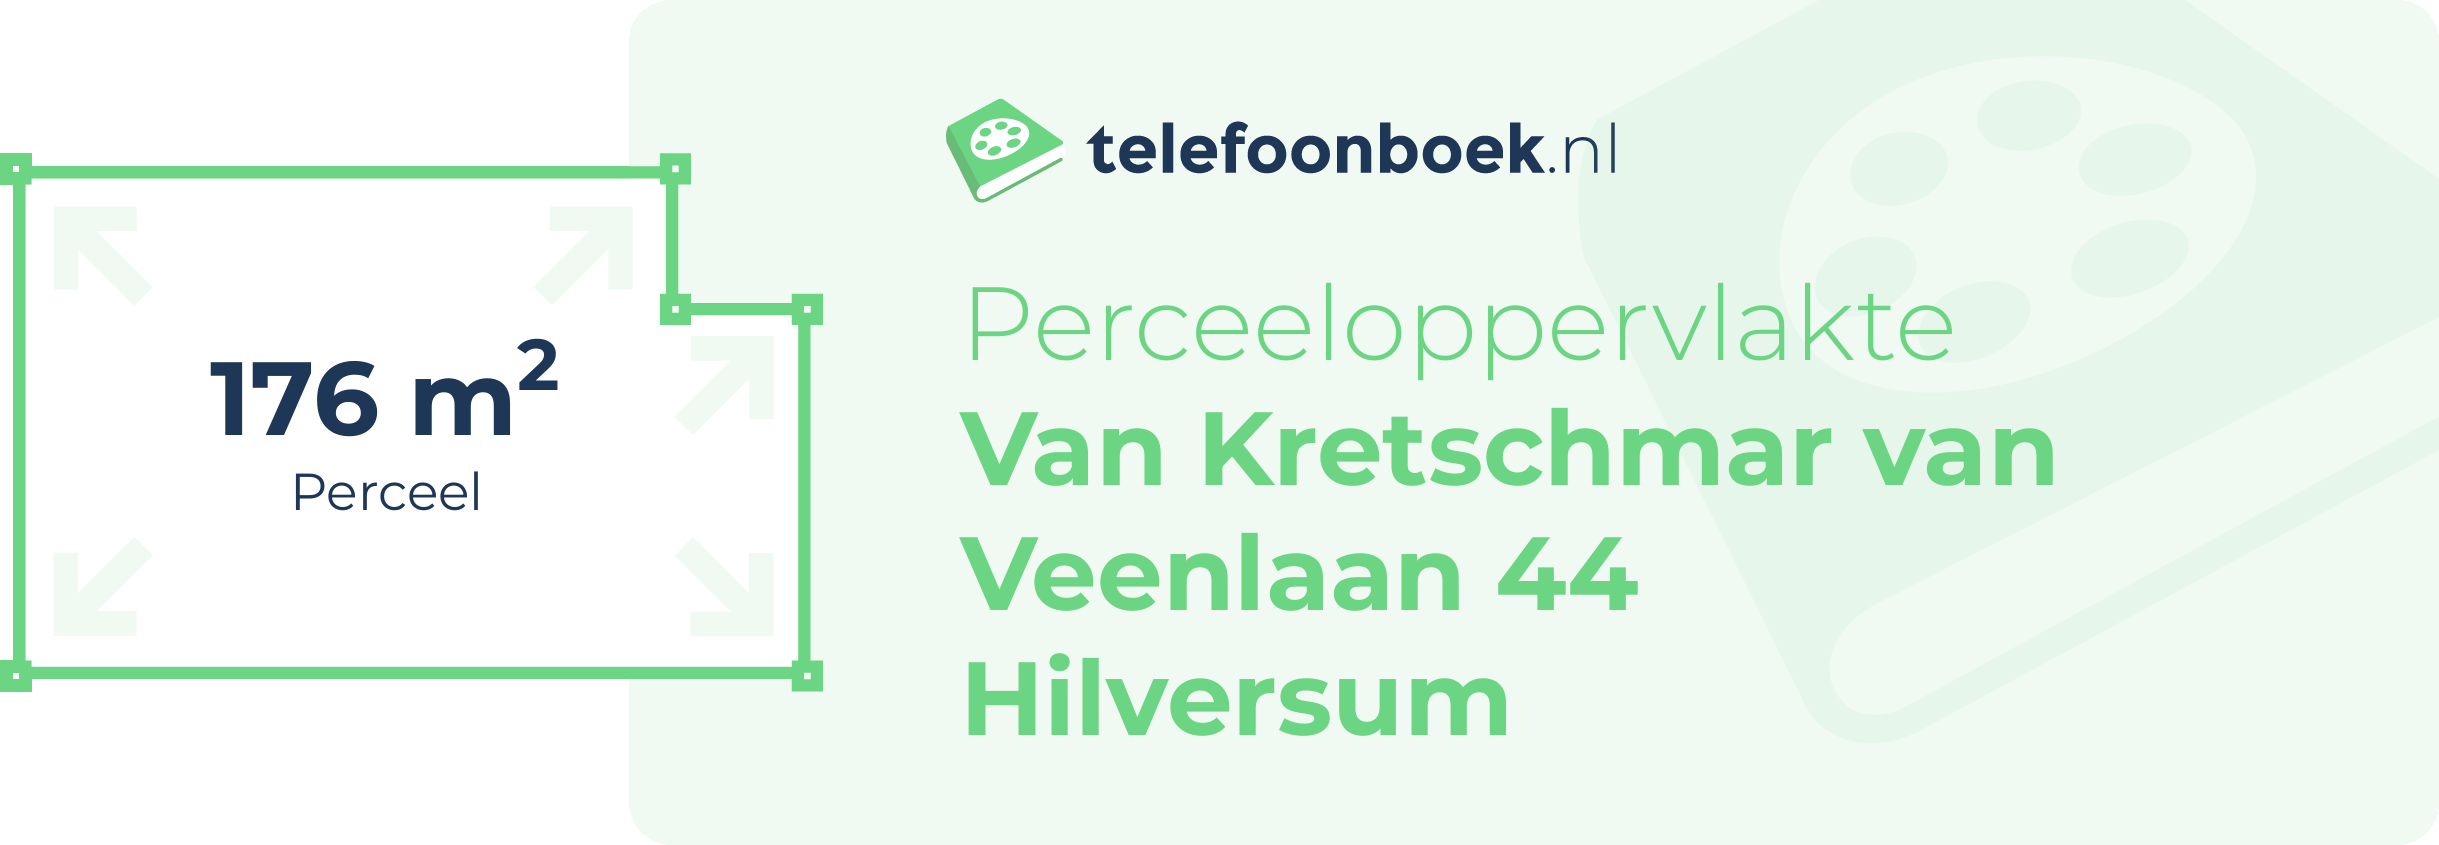 Perceeloppervlakte Van Kretschmar Van Veenlaan 44 Hilversum